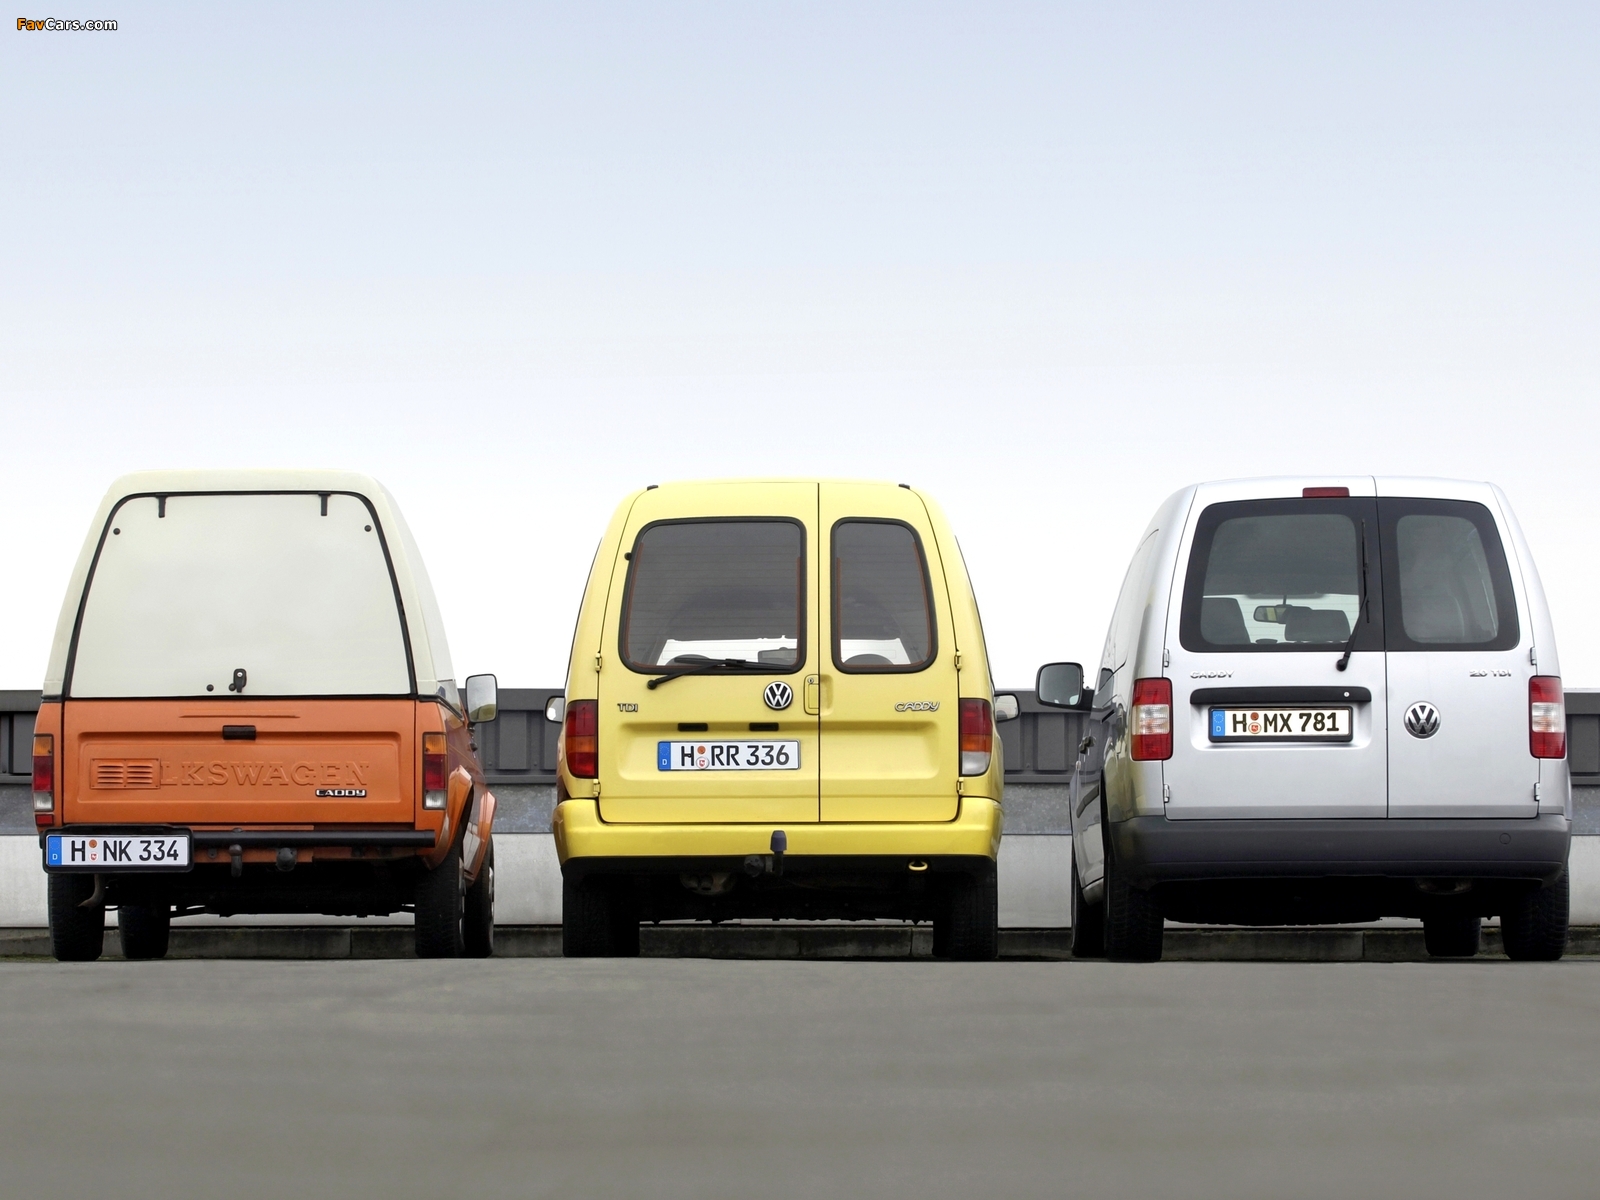 Images of Volkswagen Caddy (1600 x 1200)